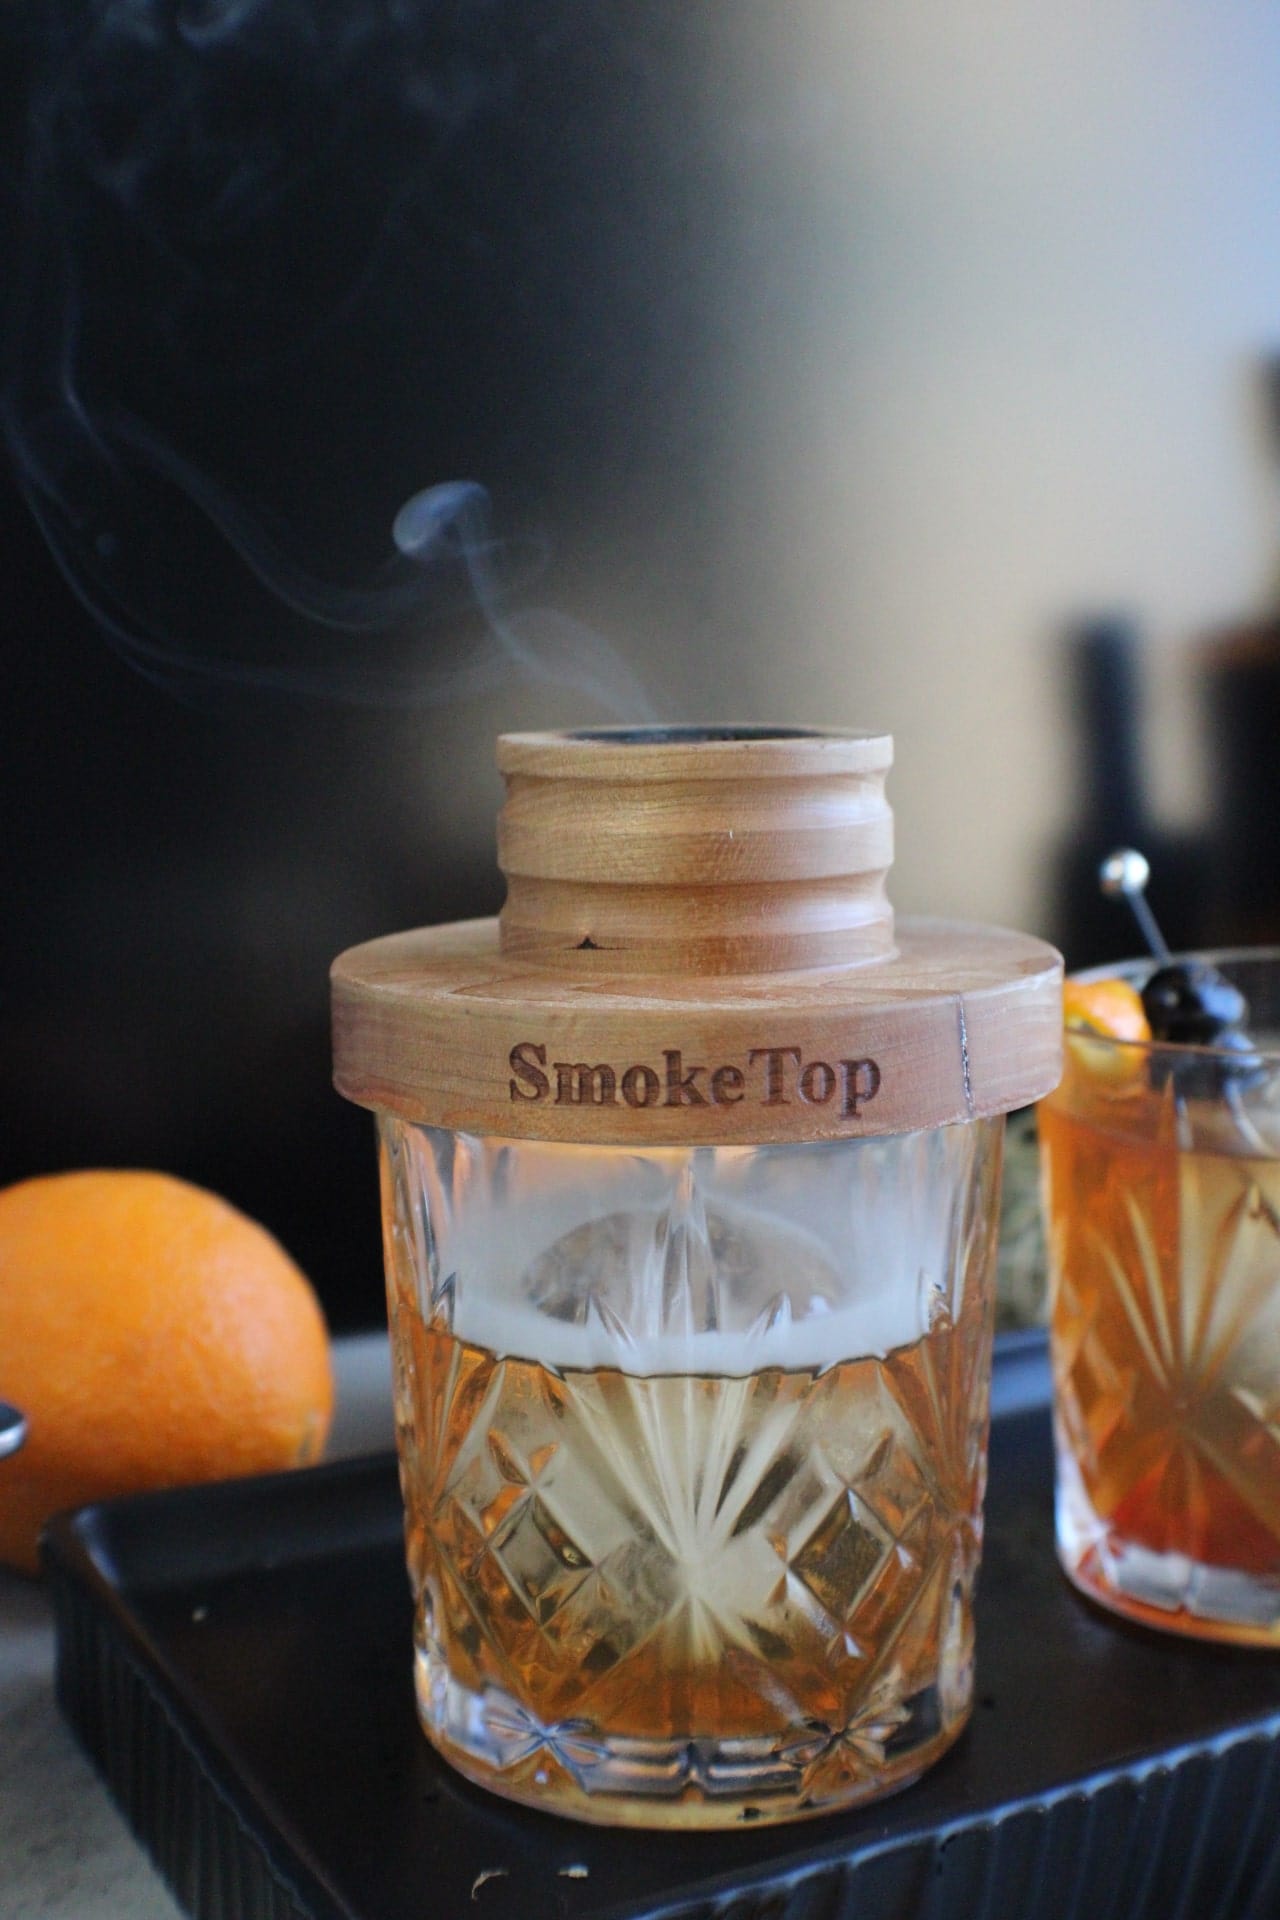 Smoke top smoker on top of glass